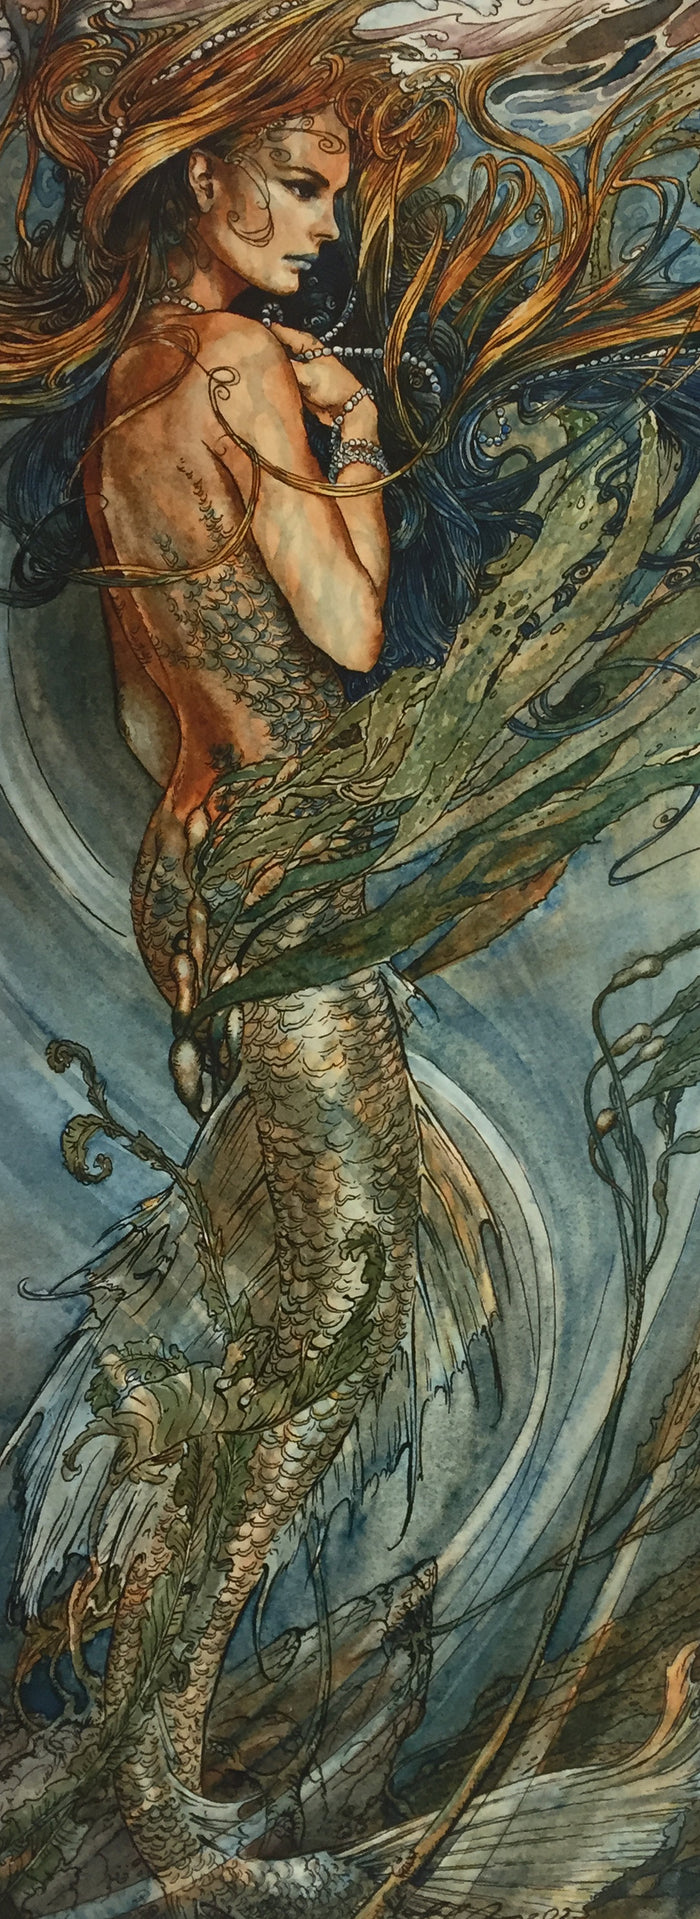 Mermaid by Ed Org